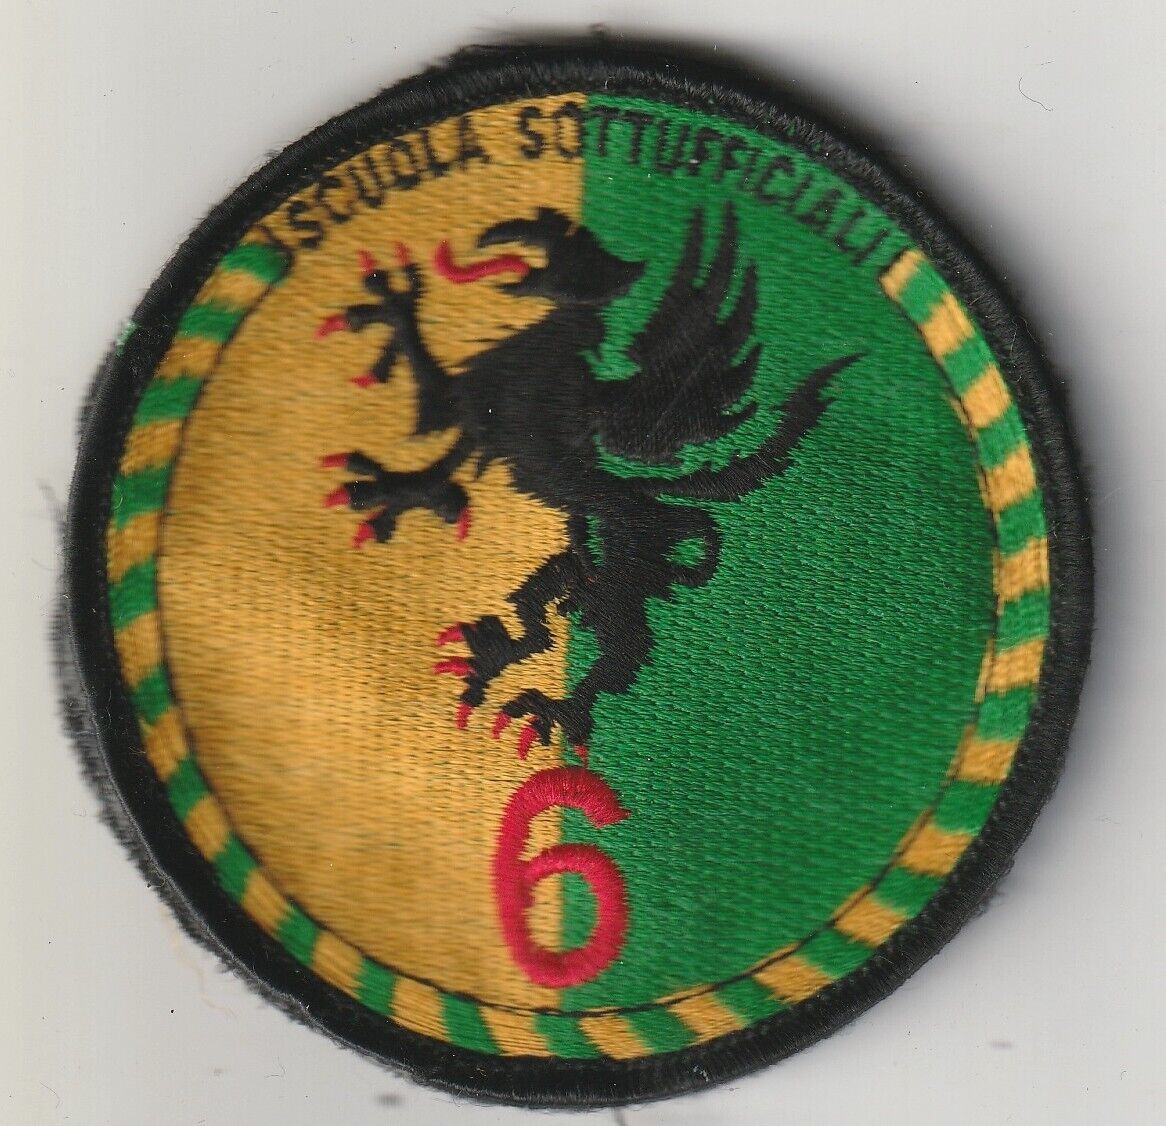 Italy army Scuola sottufficiali Fermezza 6  Military Academy patch